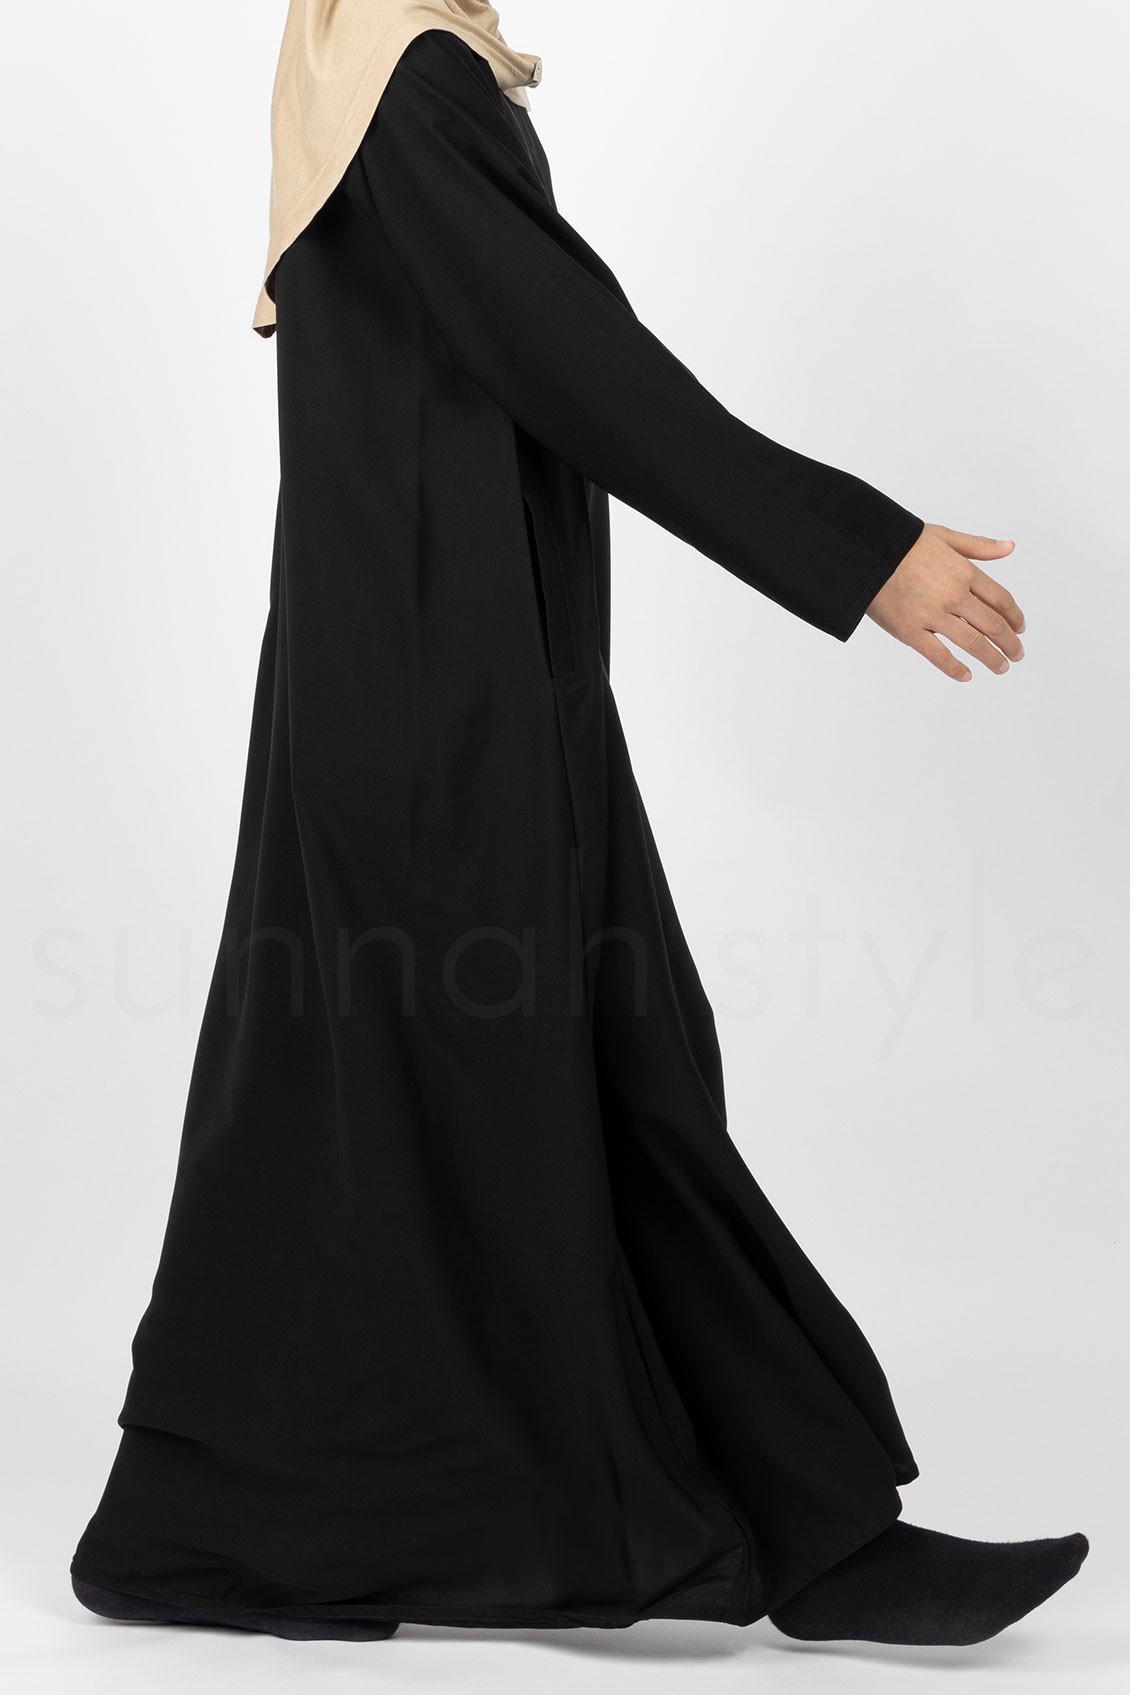 Sunnah Style Girls Plain Closed Abaya Black